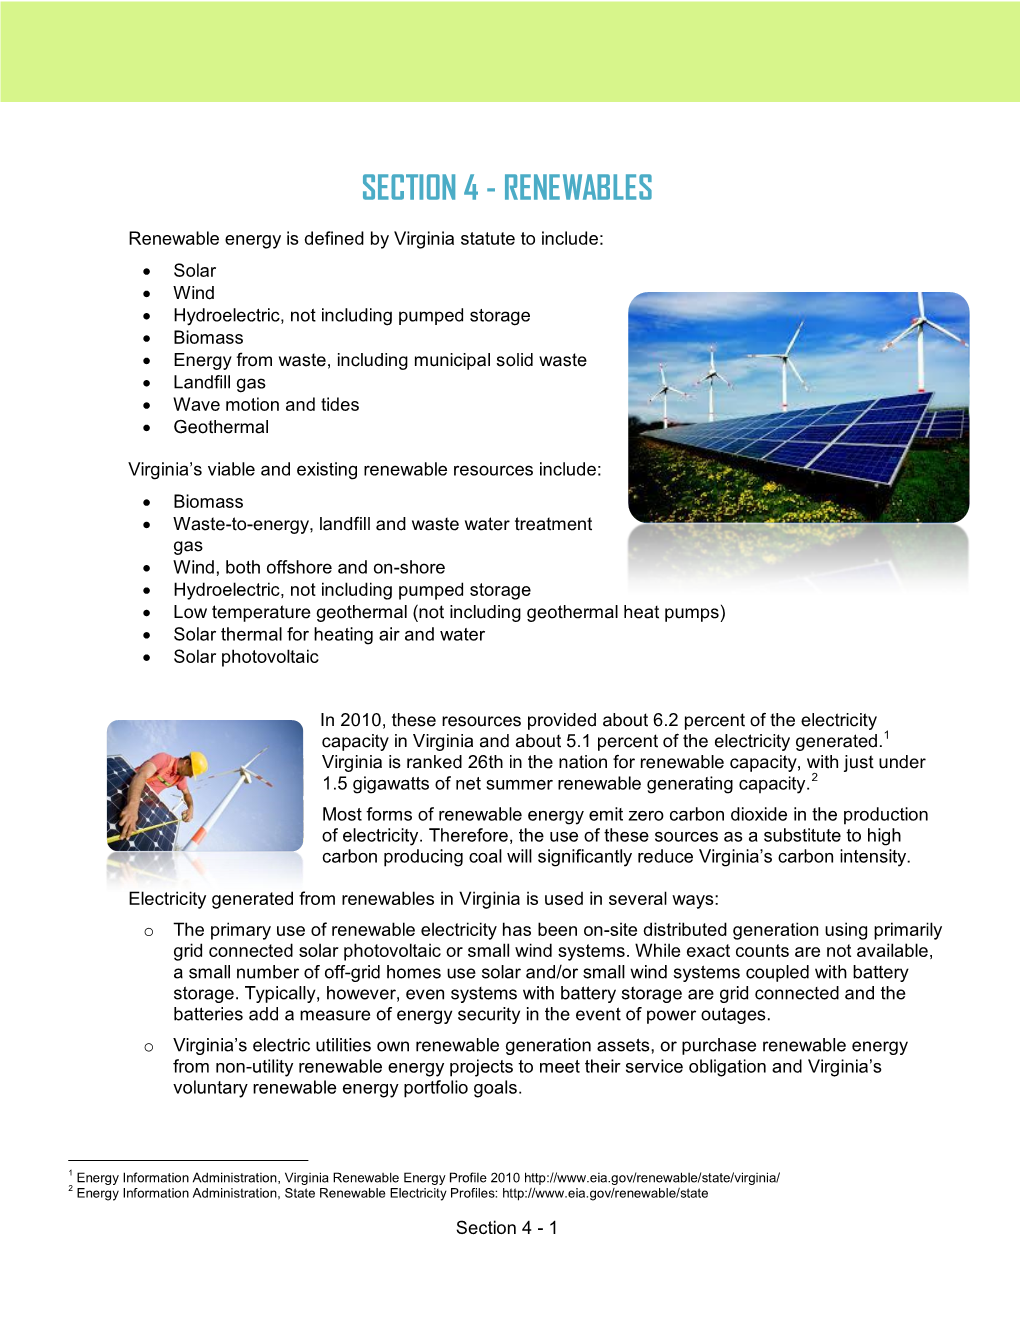 Section 4 - Renewables